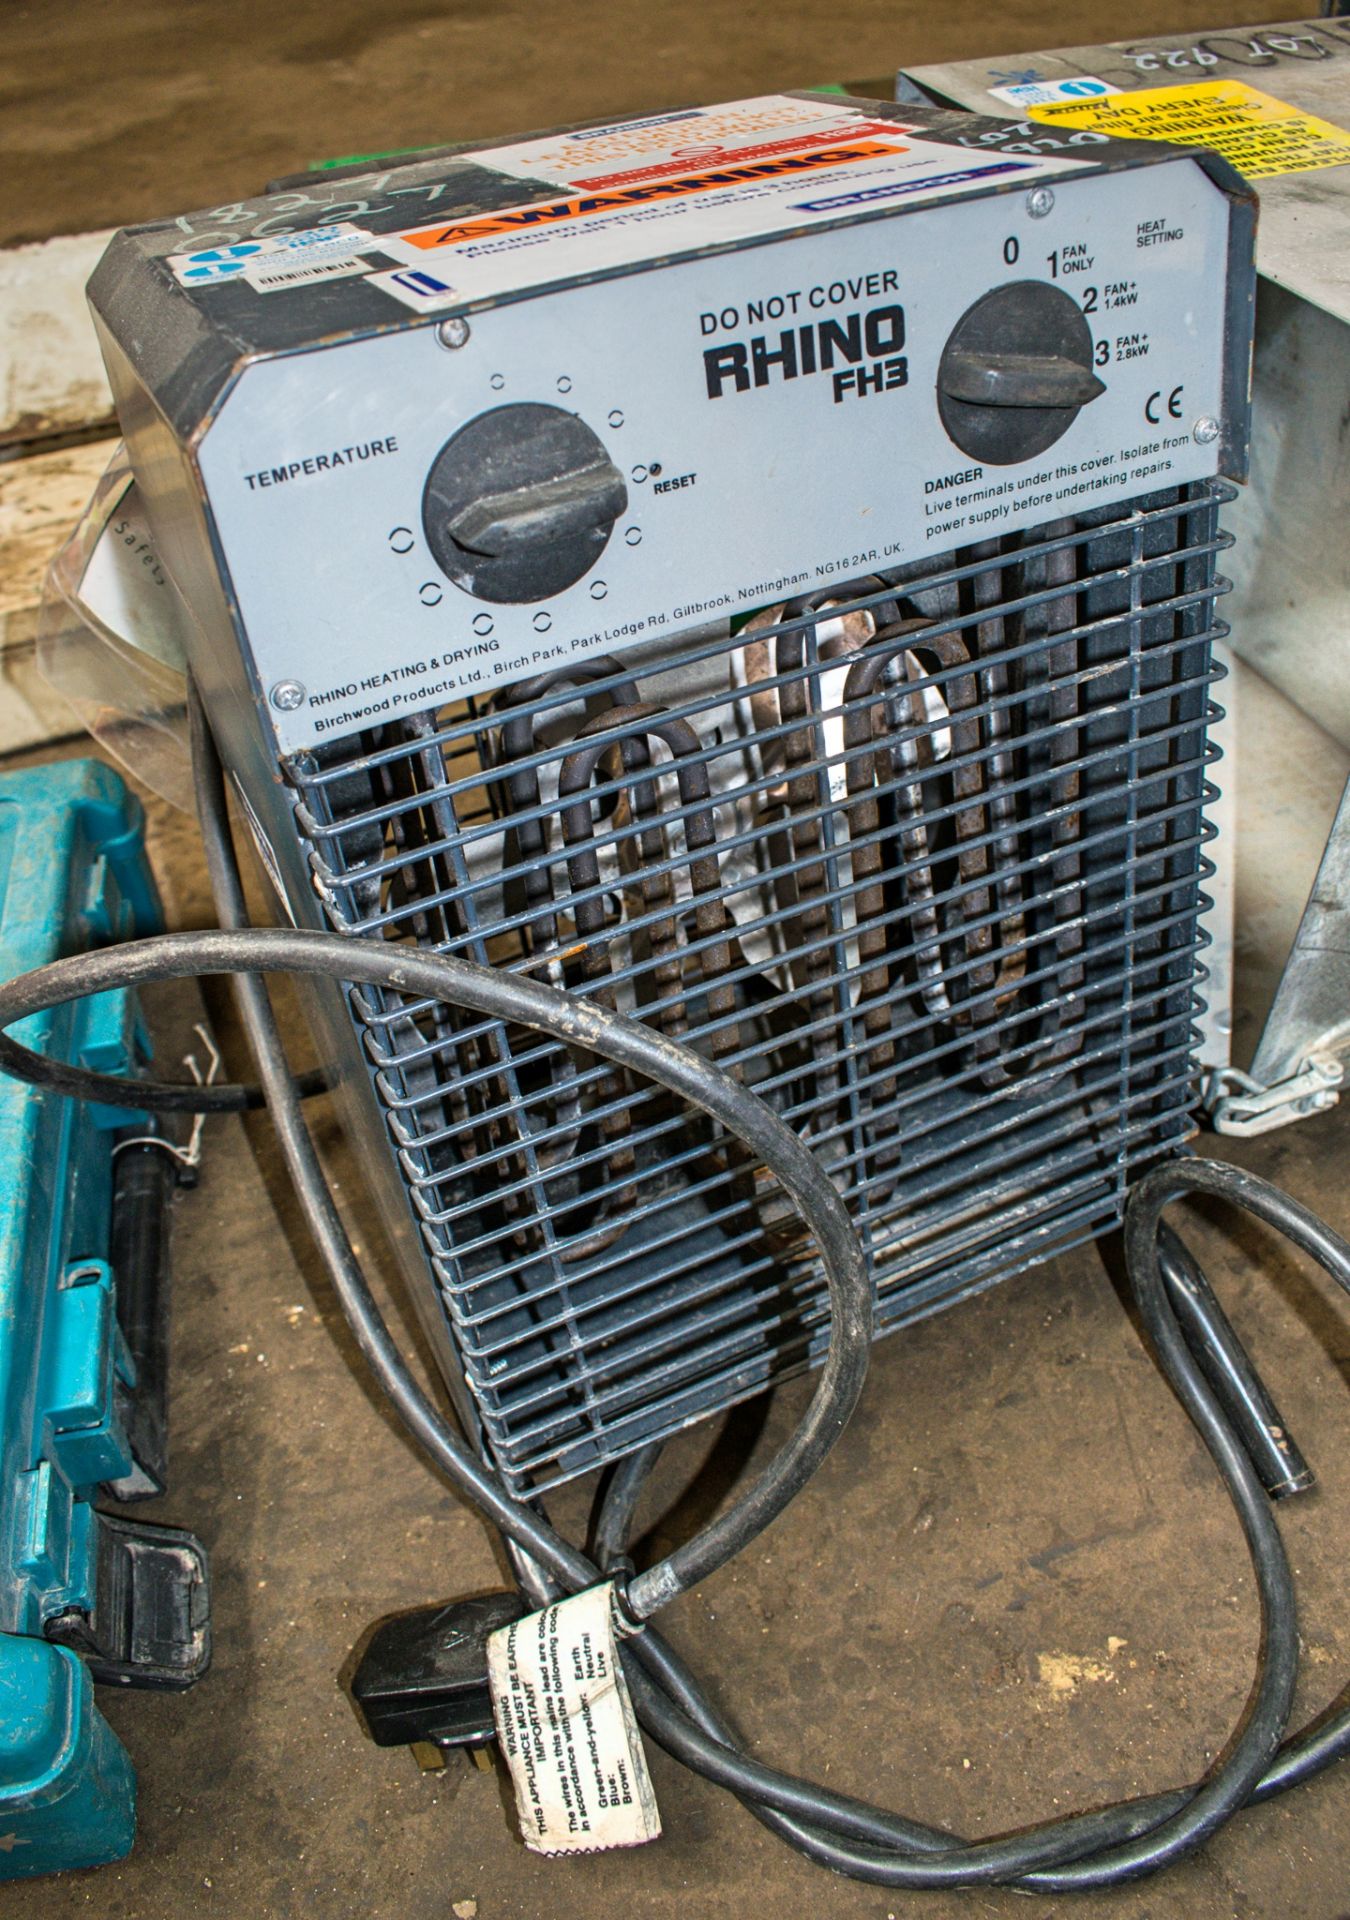 Rhino 240v fan heater